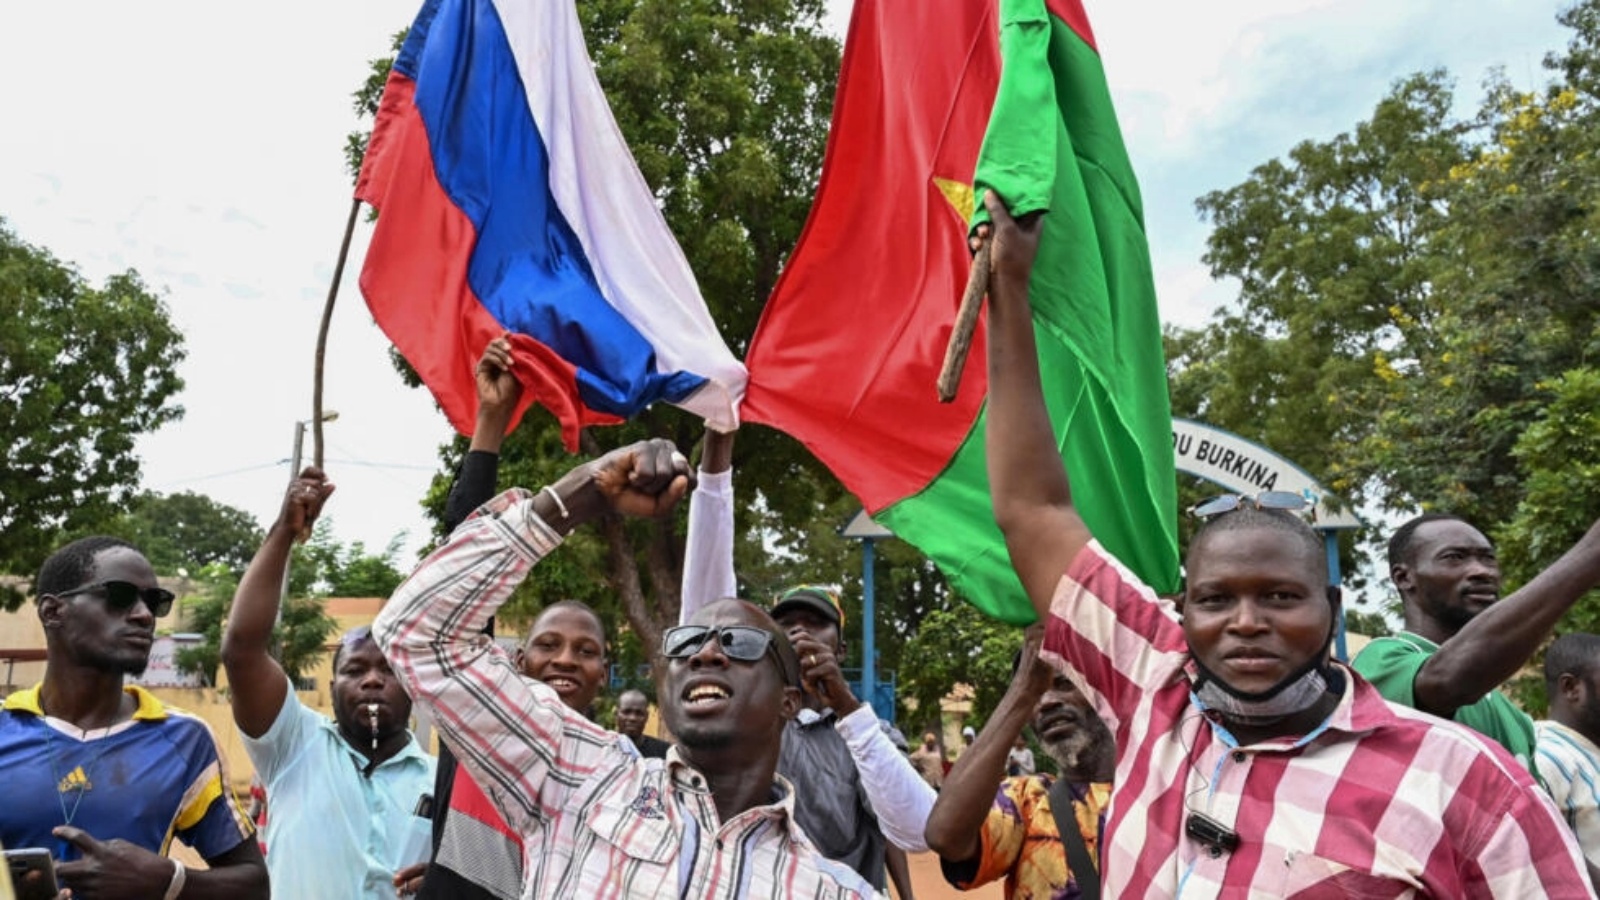 أنصار زعيم المجلس العسكري الجديد في بوركينا فاسو إبراهيم تراوري يحملون العلم الوطني لبوركينا فاسو وروسيا خلال مظاهرة بالقرب من مقر الإذاعة والتلفزيون الوطني (RTB) في واغادوغو في 6 أكتوبر 2022